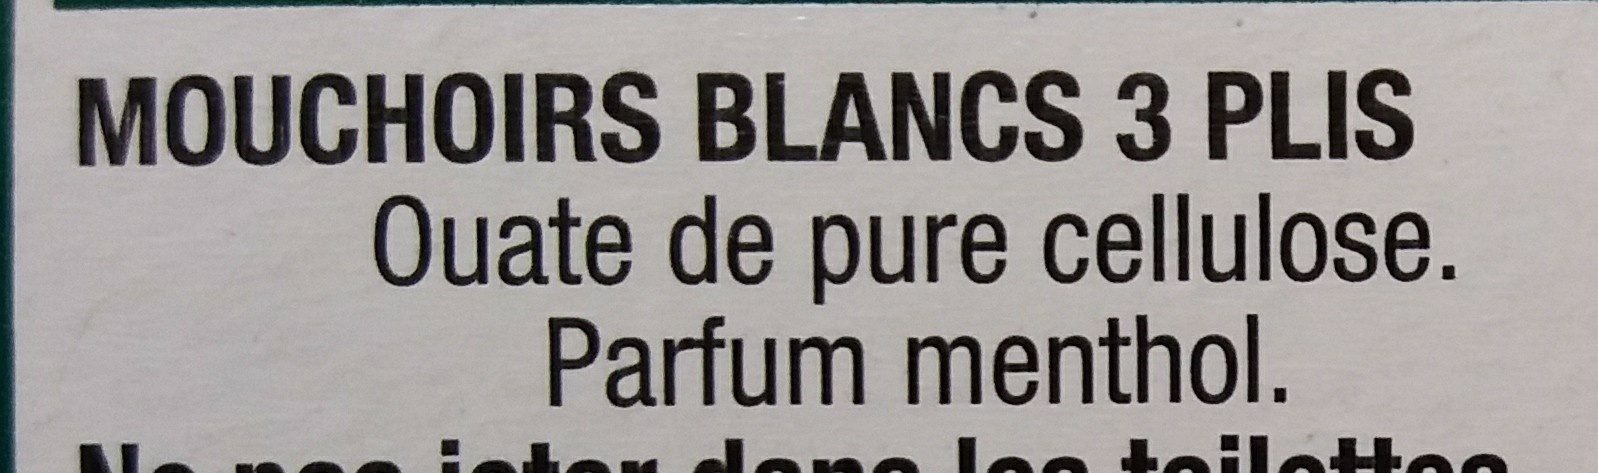 Mouchoirs Menthol Blancs - Ingrédients - fr